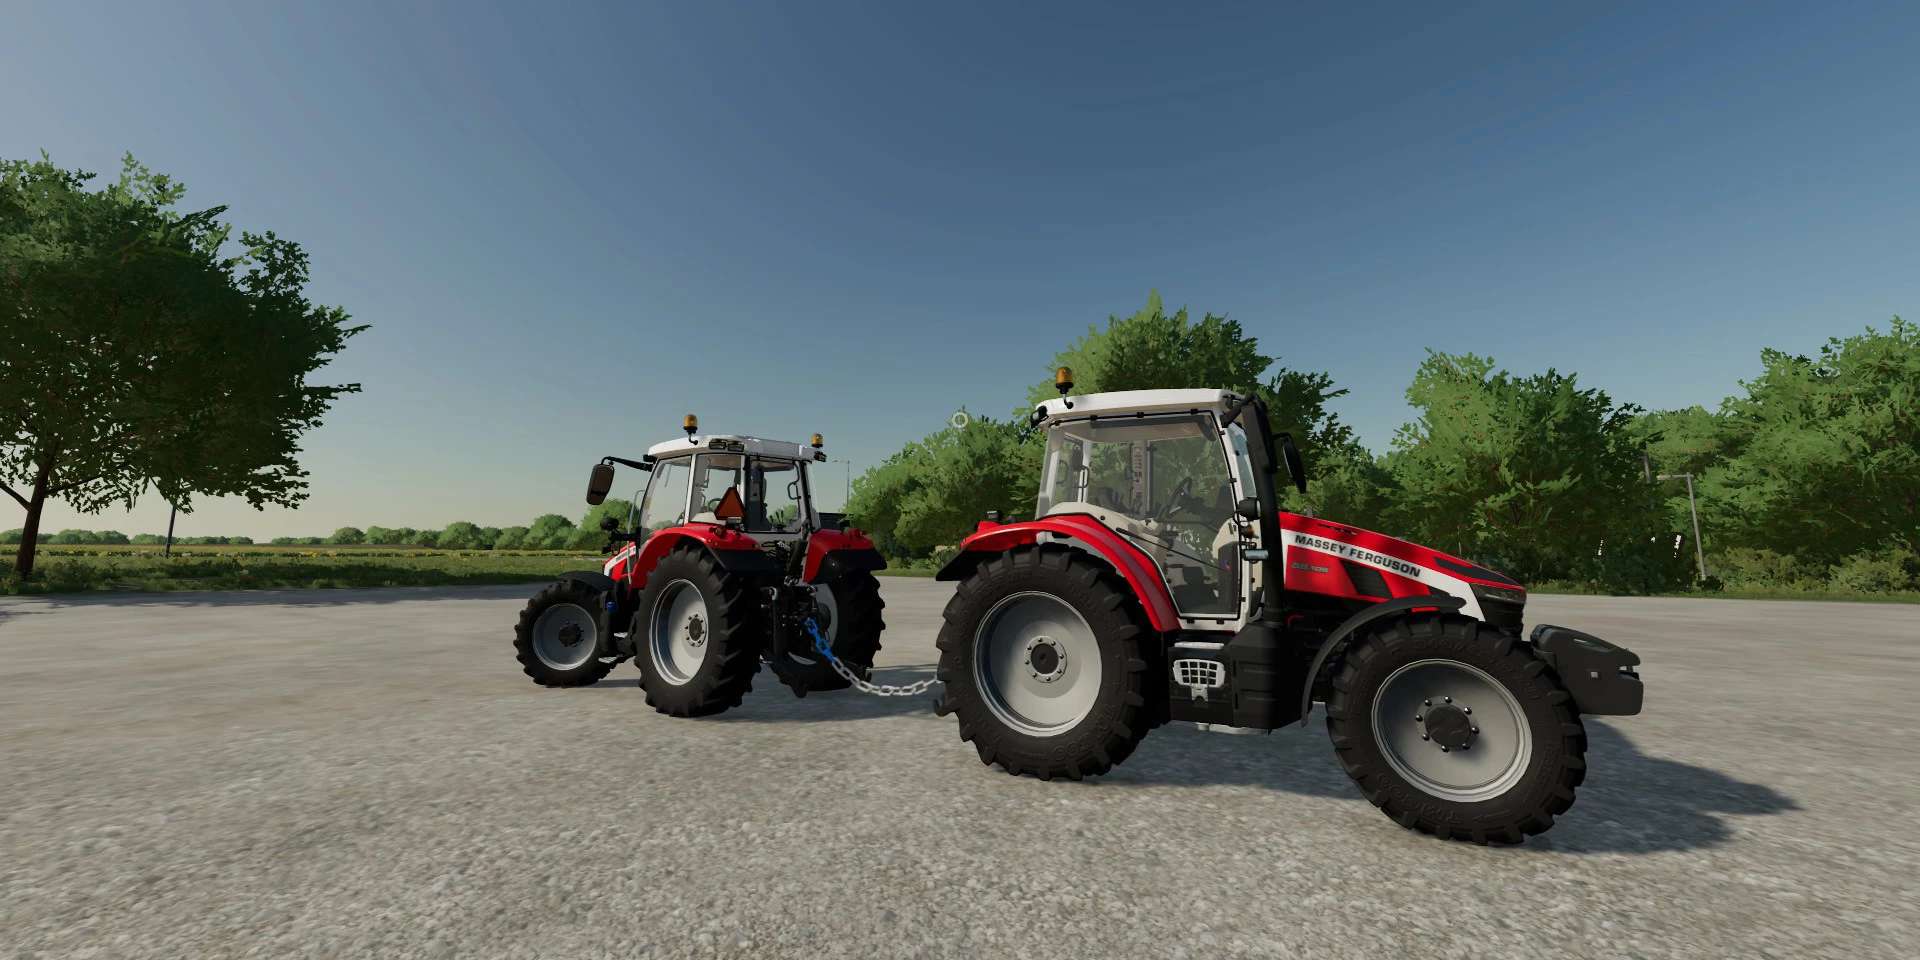 Towing Chain V25 Fs22 Farming Simulator 22 Mod Fs22 Mod 7963